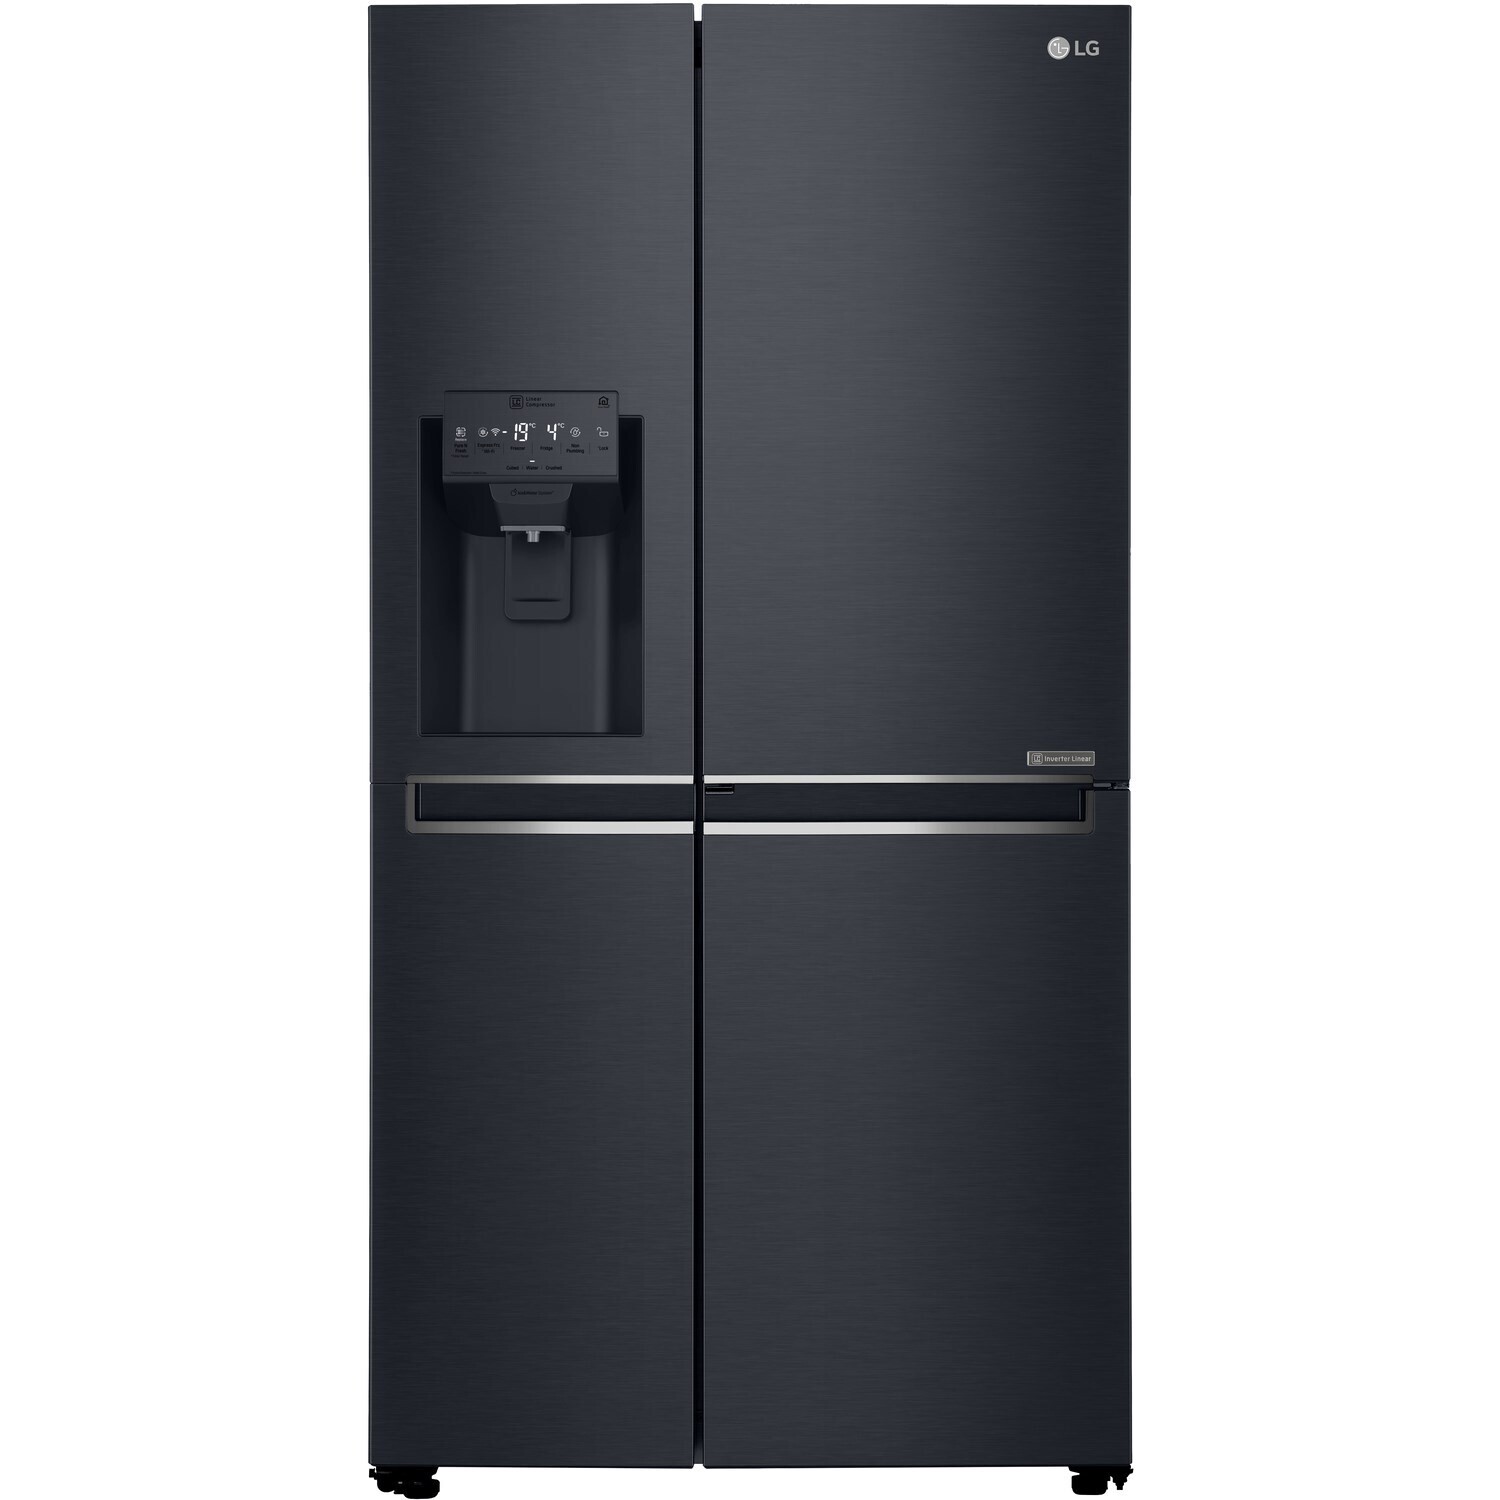 LG 601L Matte Black Side-By-Side Fridge Freezer with Door-In-Door – GC-J247CQBV